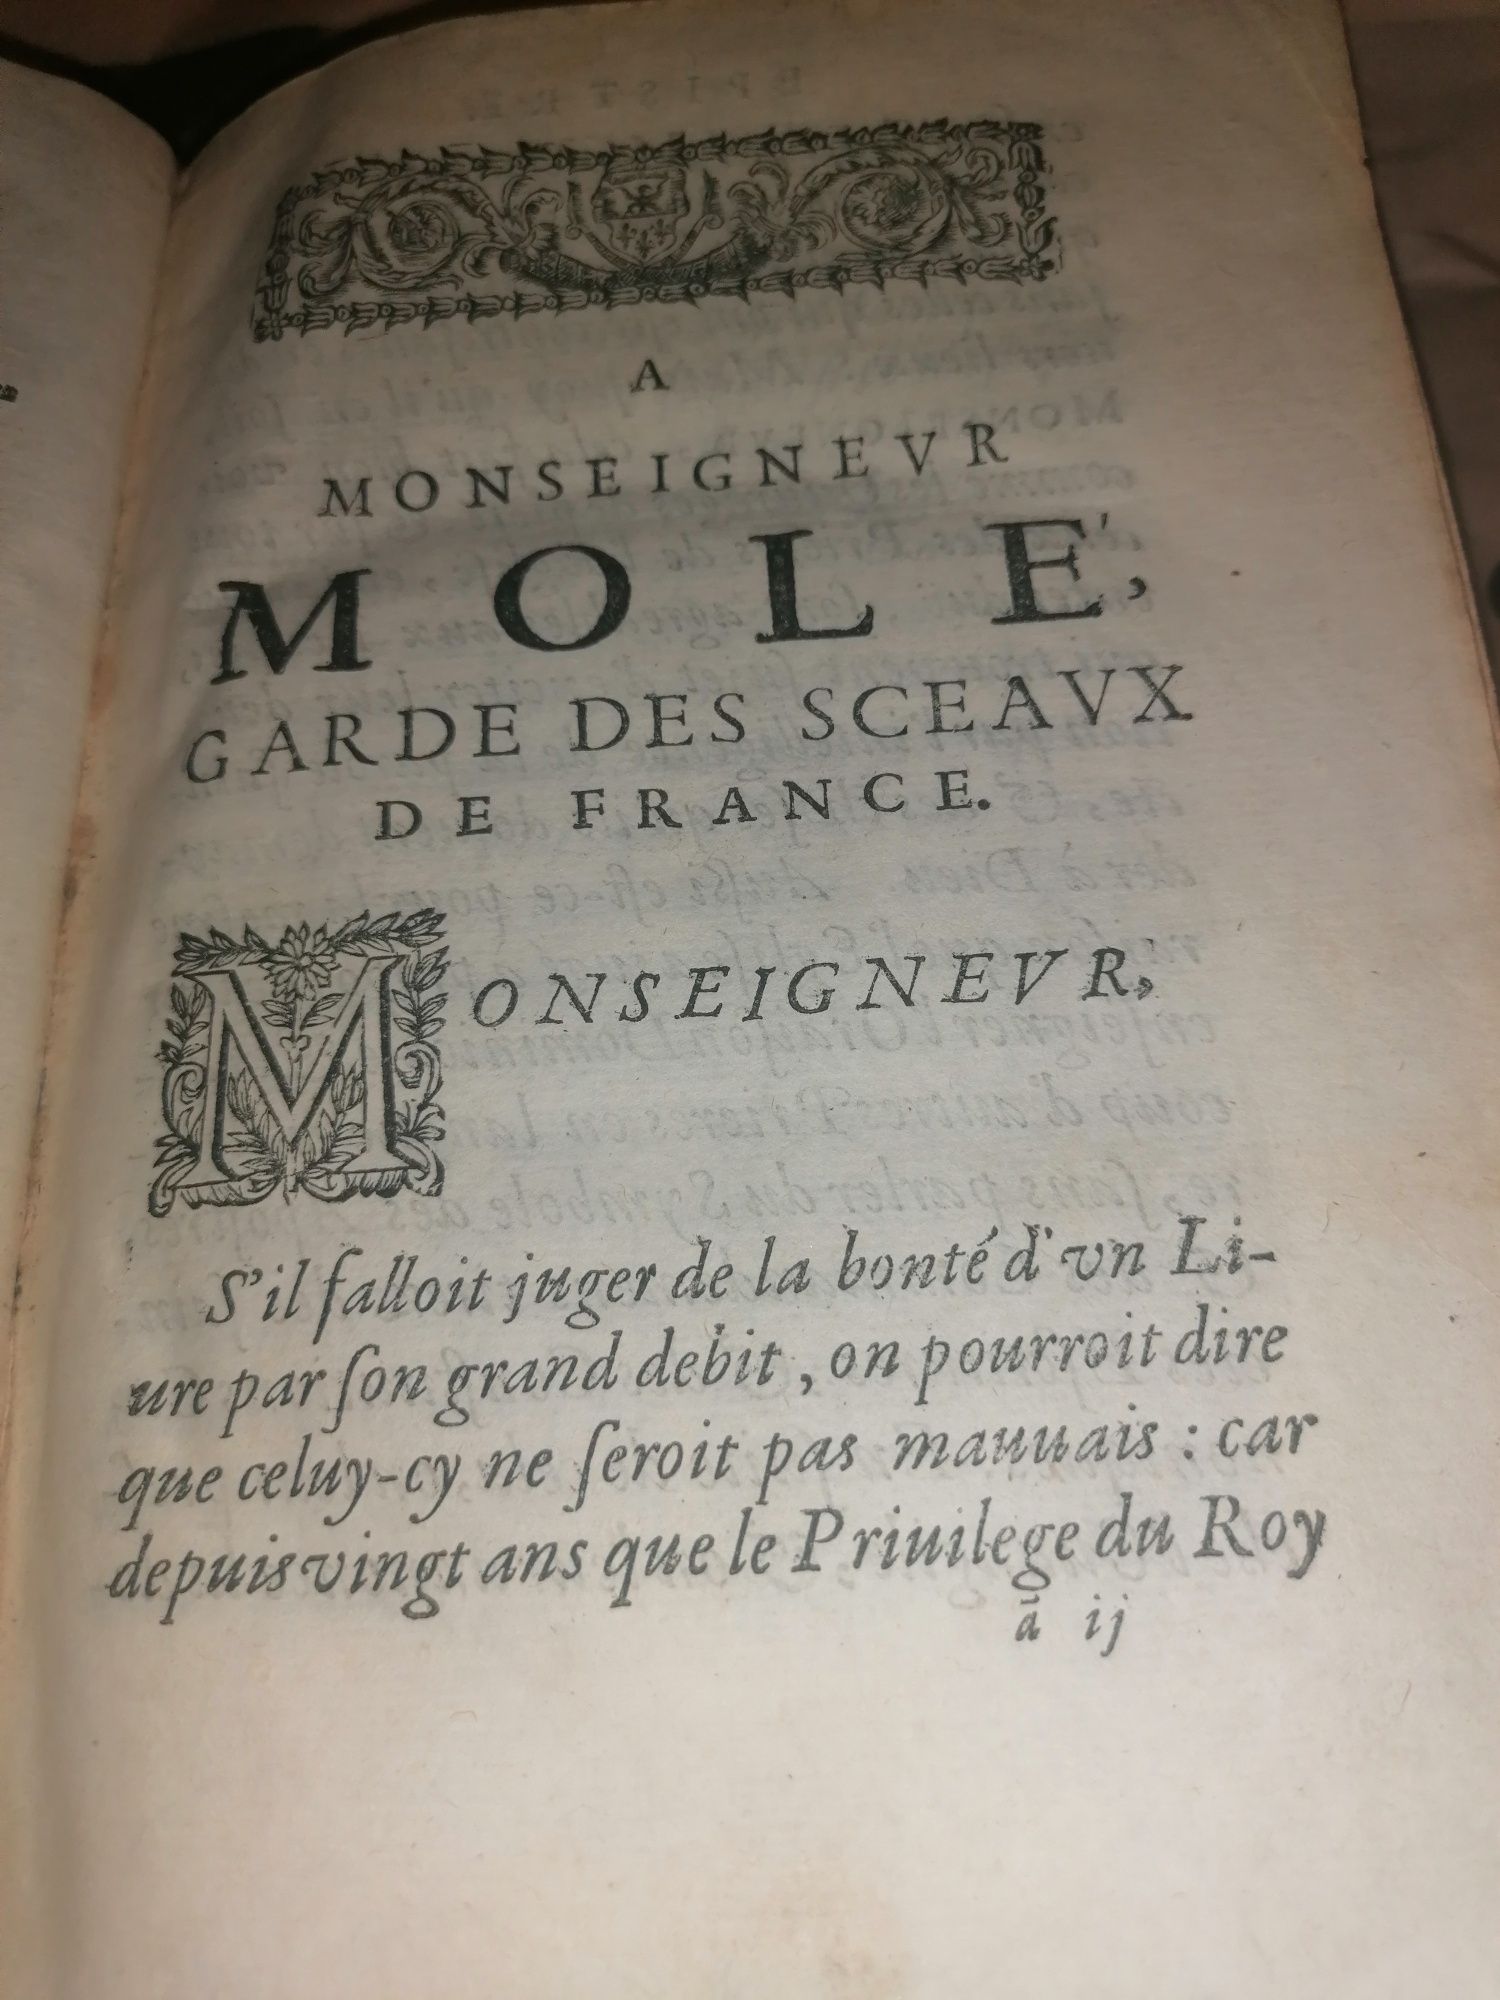 Vând o superba carte din 1673,scrisa în latina și franceza.